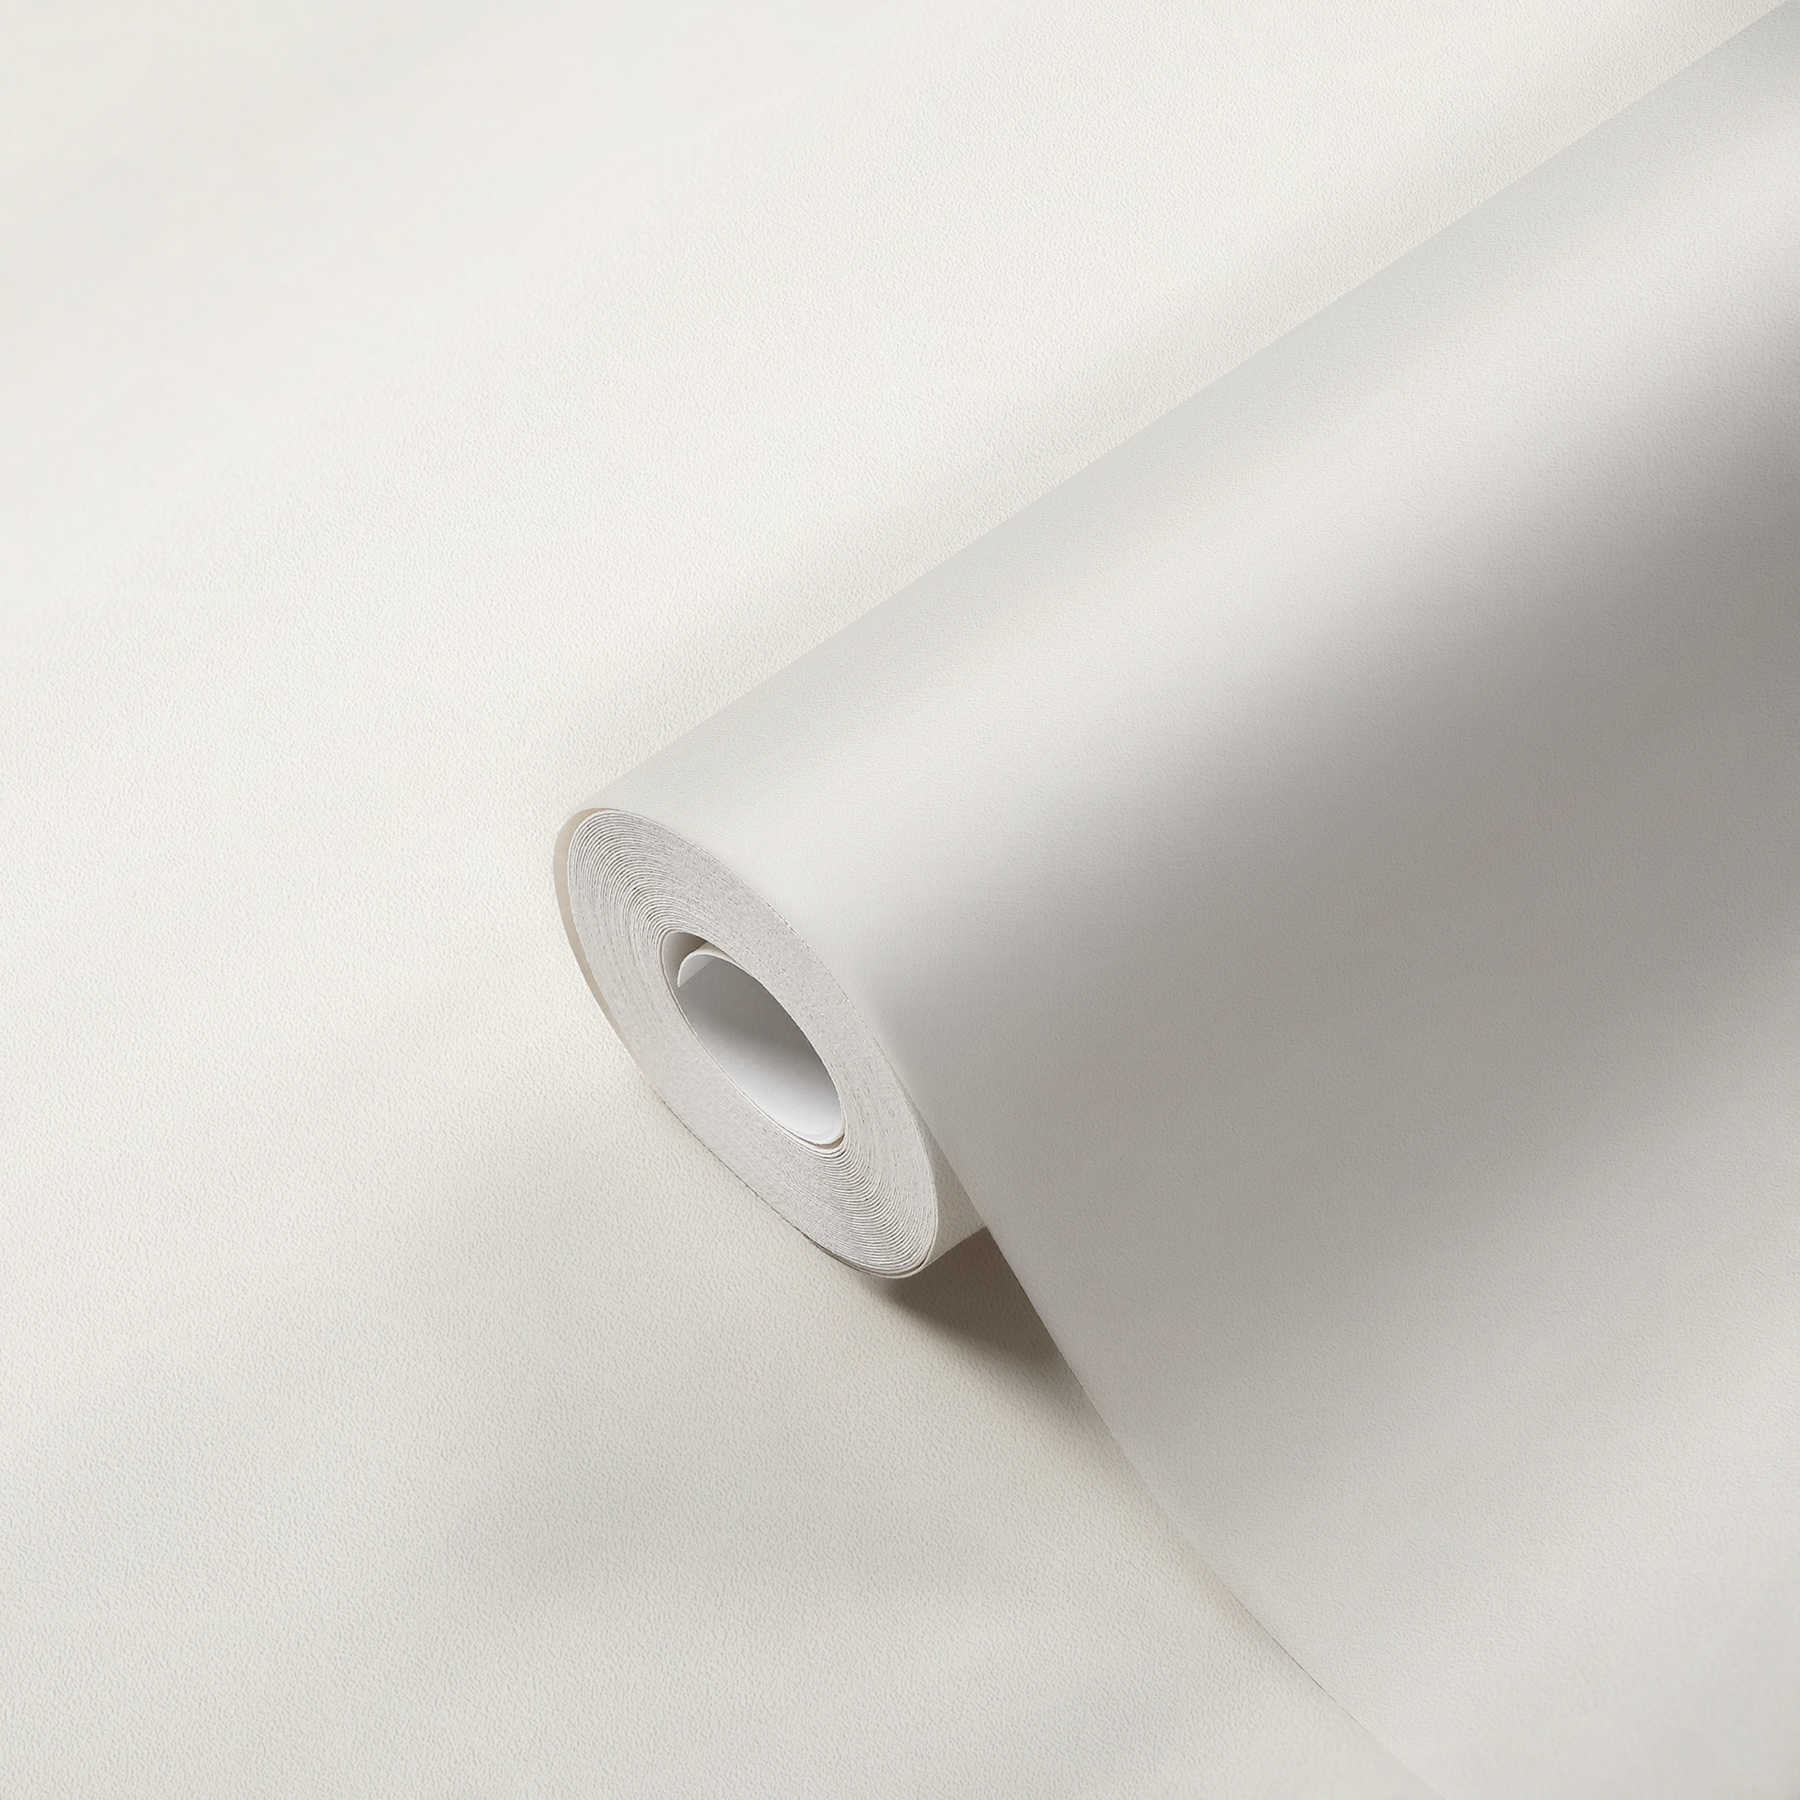             Papier peint intissé blanc, double largeur grand rouleau 21m
        